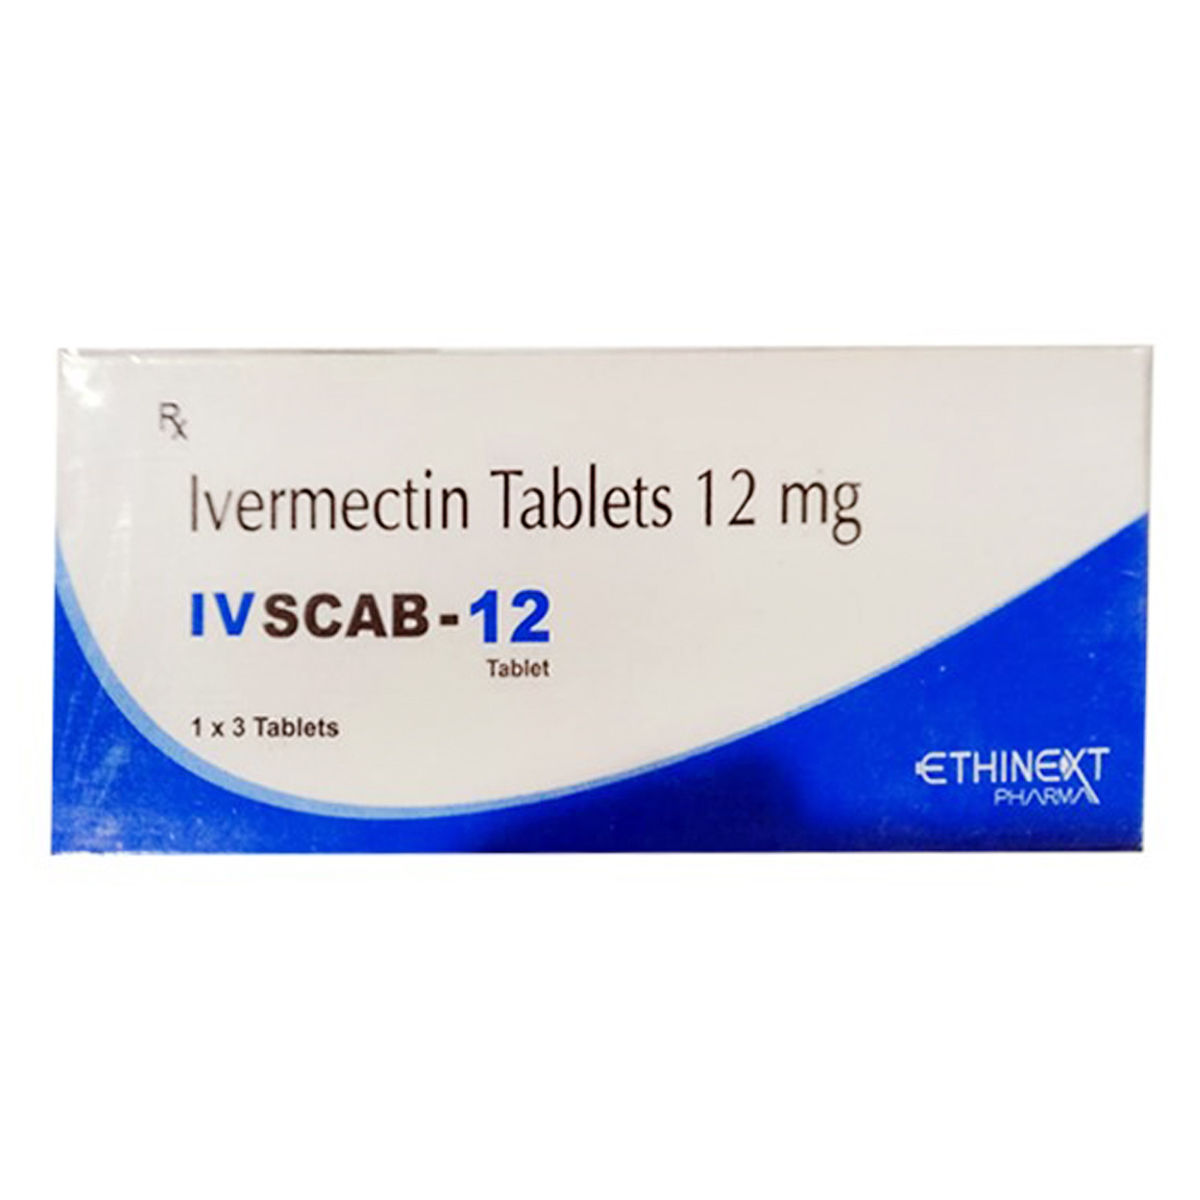 Buy Ivscab-12 Tablet 3's Online